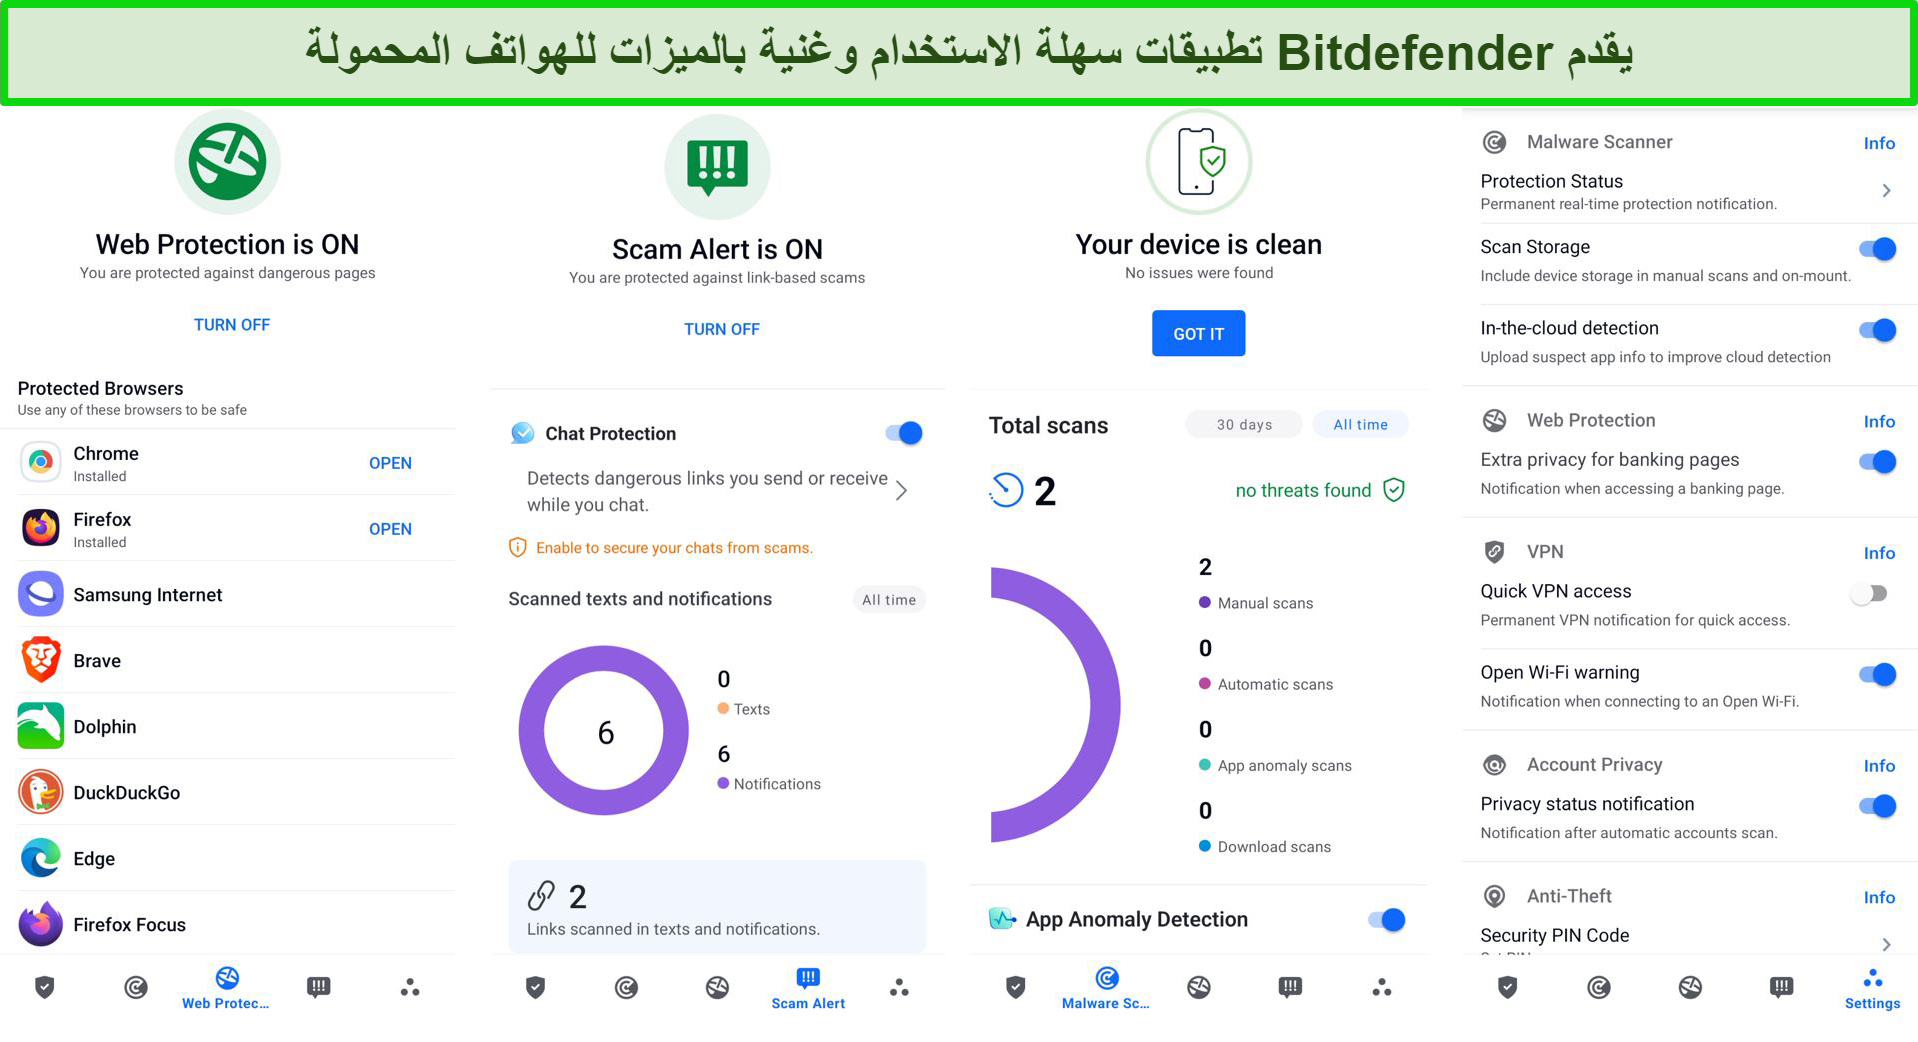 يقدم Bitdefender تطبيقات سهلة الاستخدام وغنية بالميزات للهواتف المحمولة